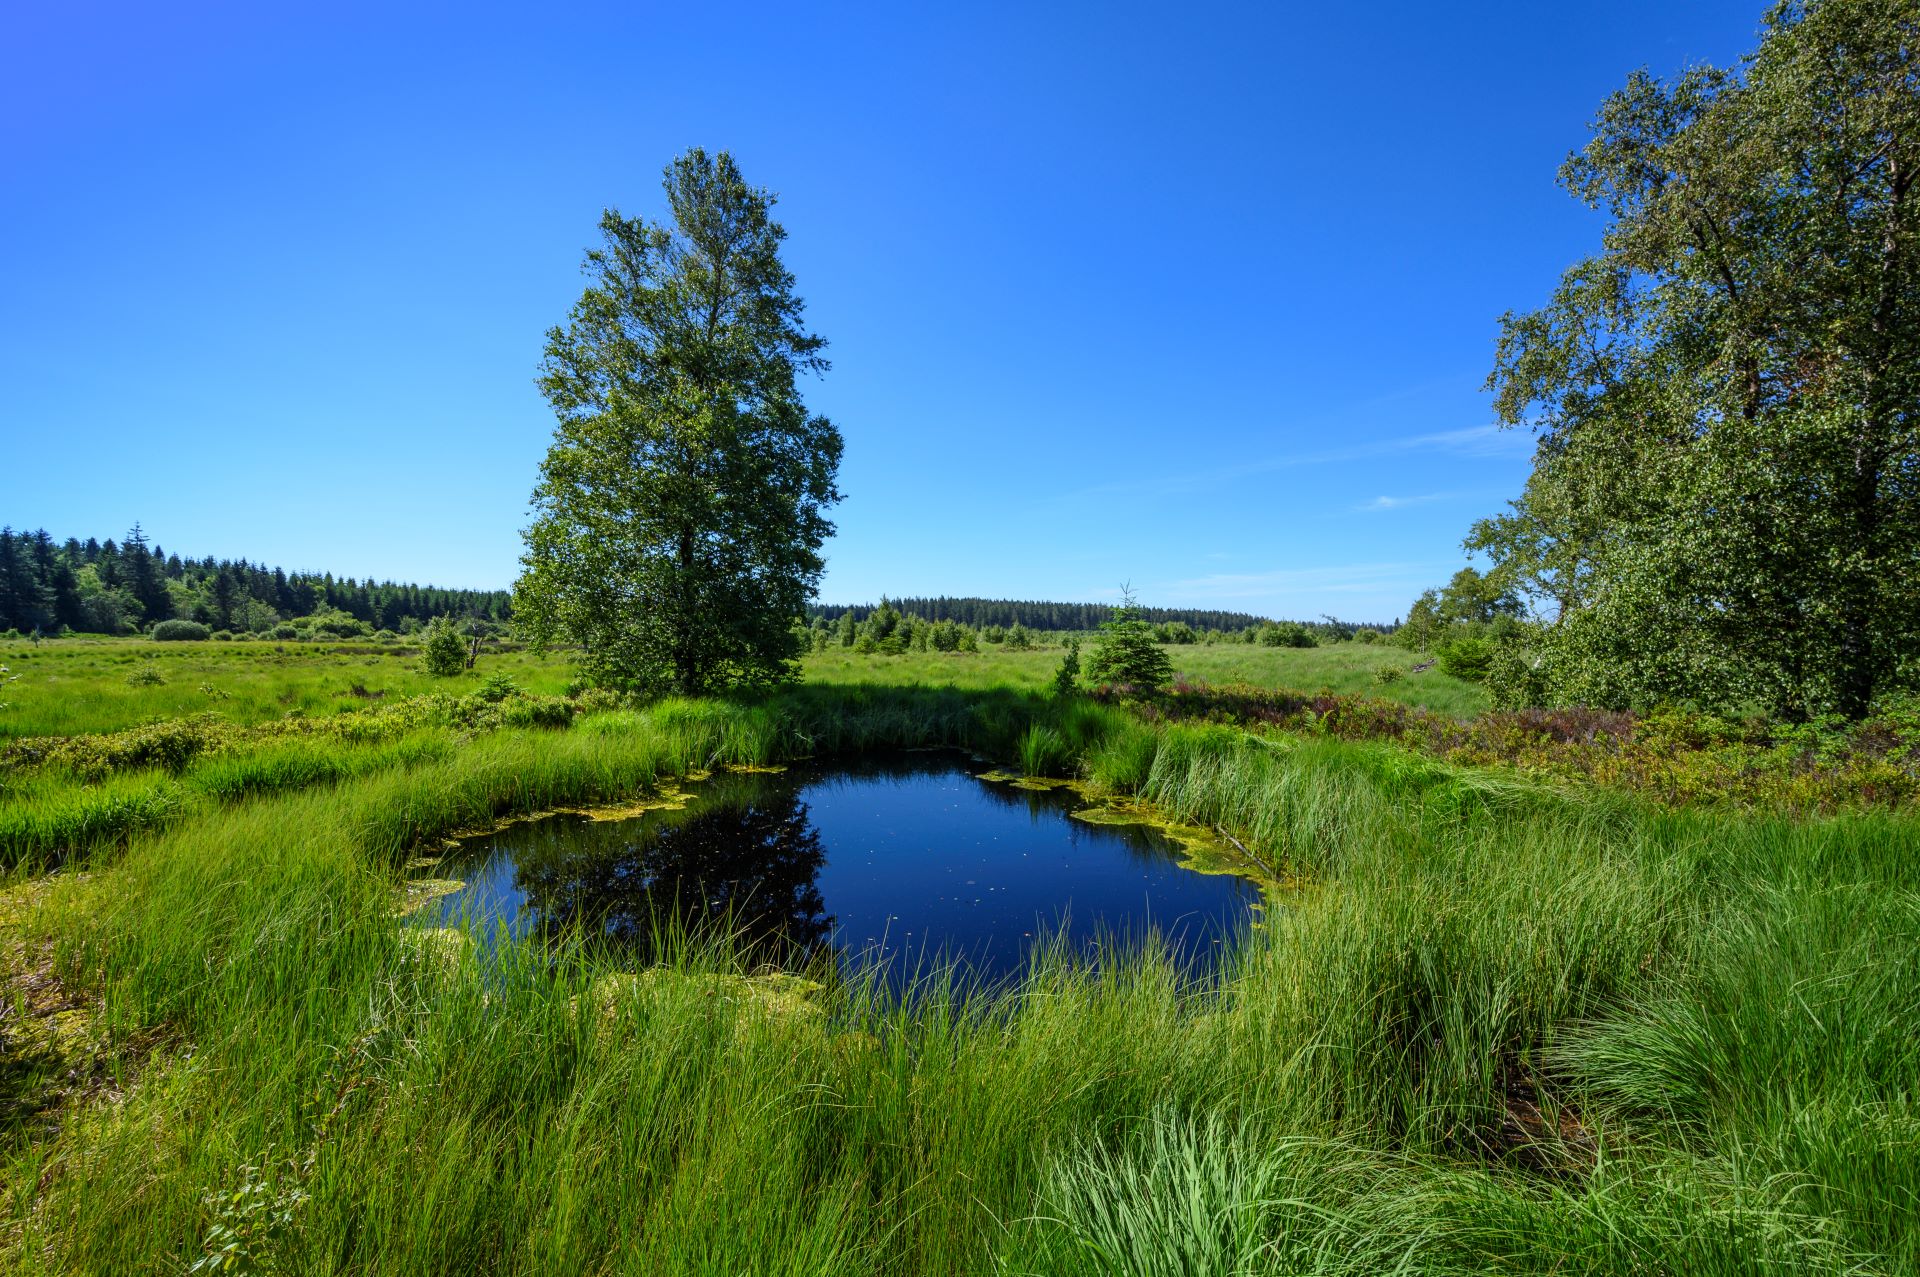 In einem kleinen Teich spiegelt sich der blaue Himmel. Ein Baum und viele wilde Gräser umgeben ihn.